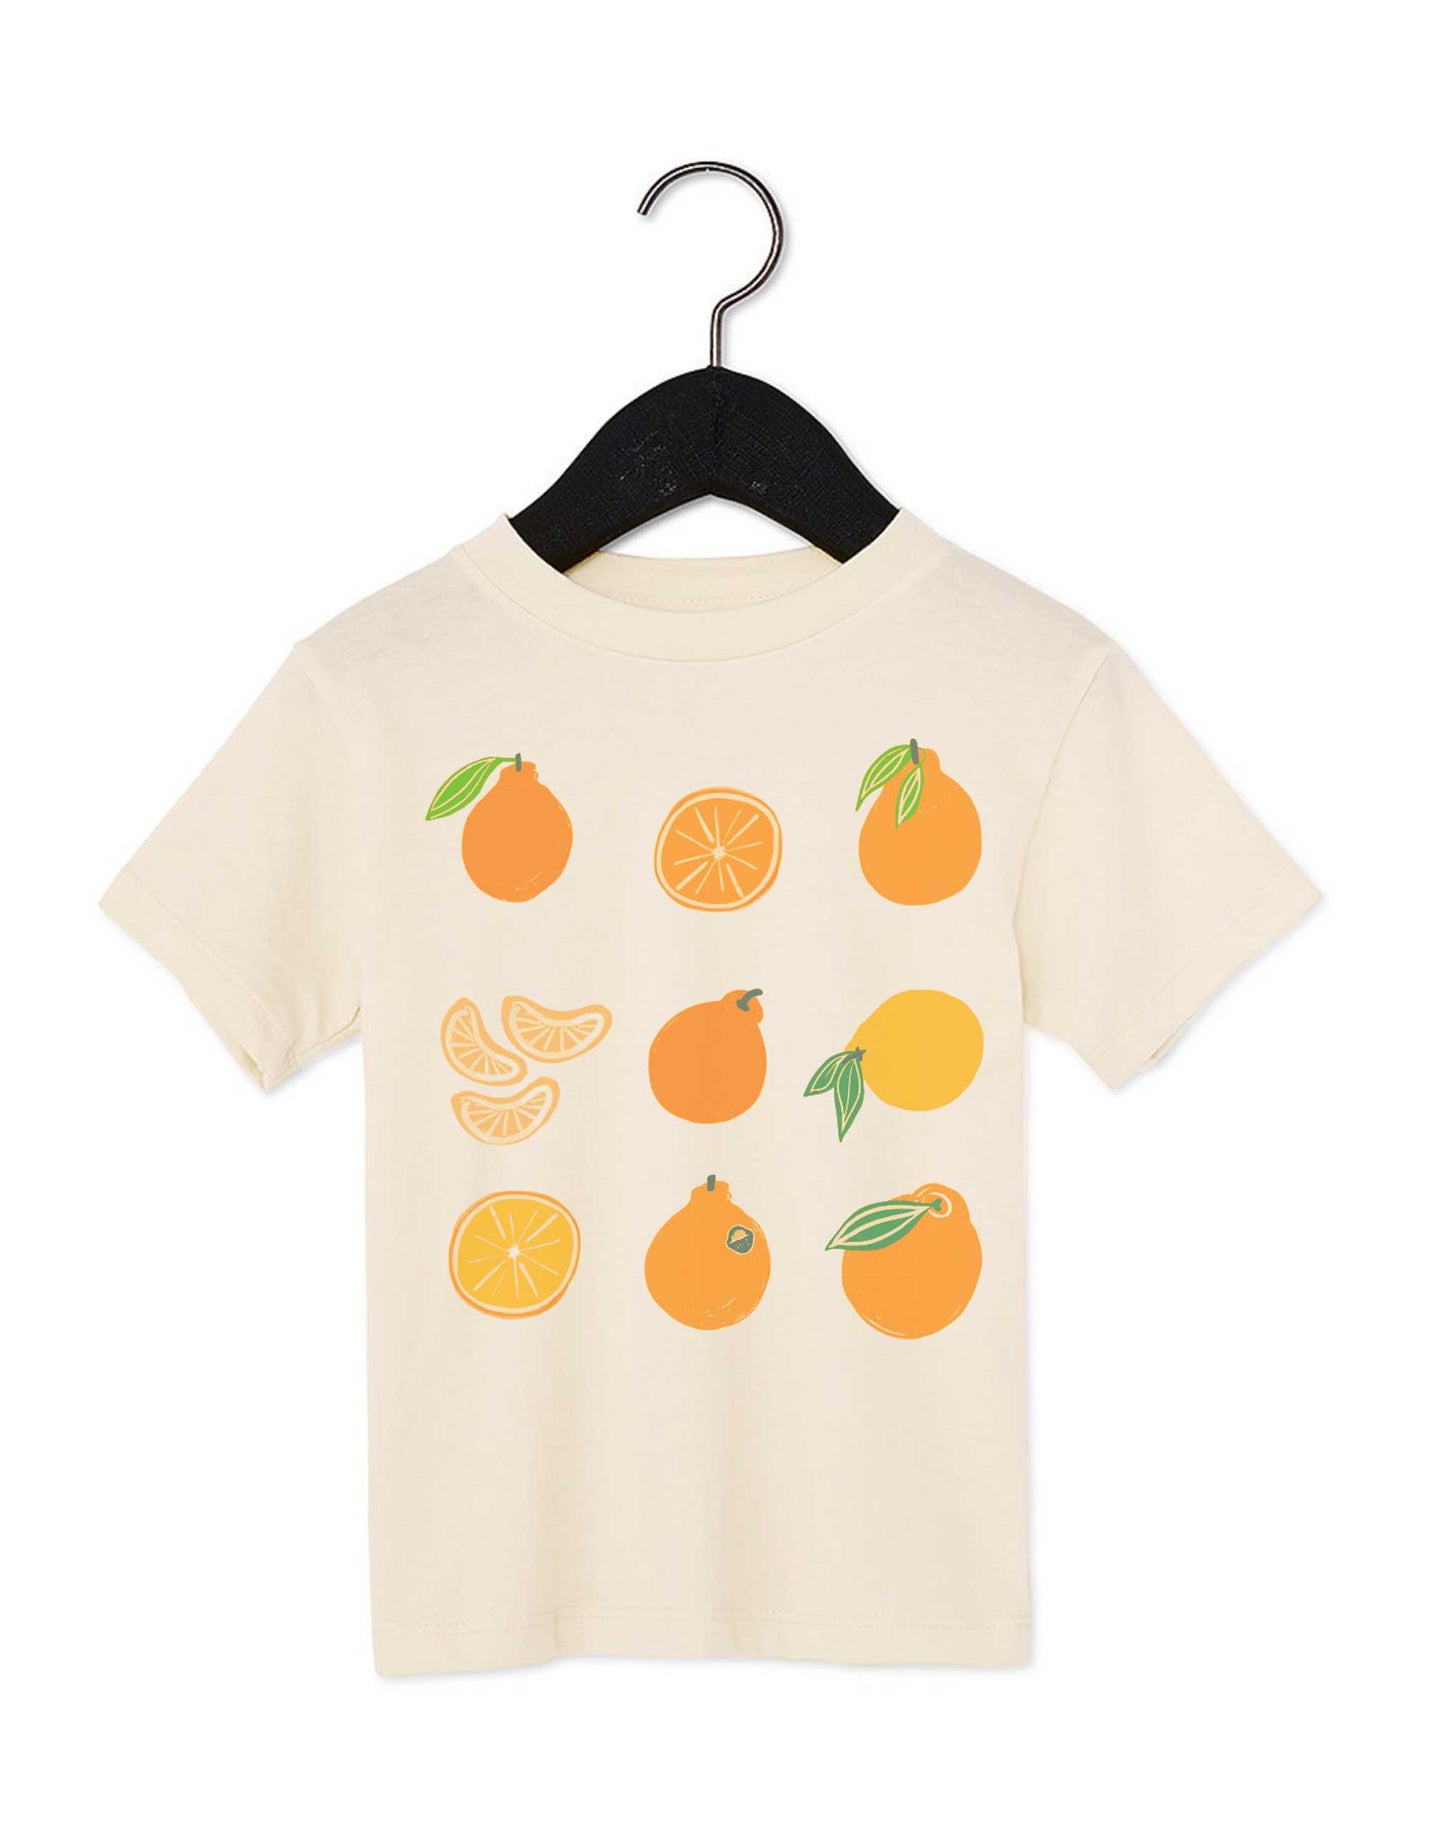 Jeju Tangerine Kids T-Shirt